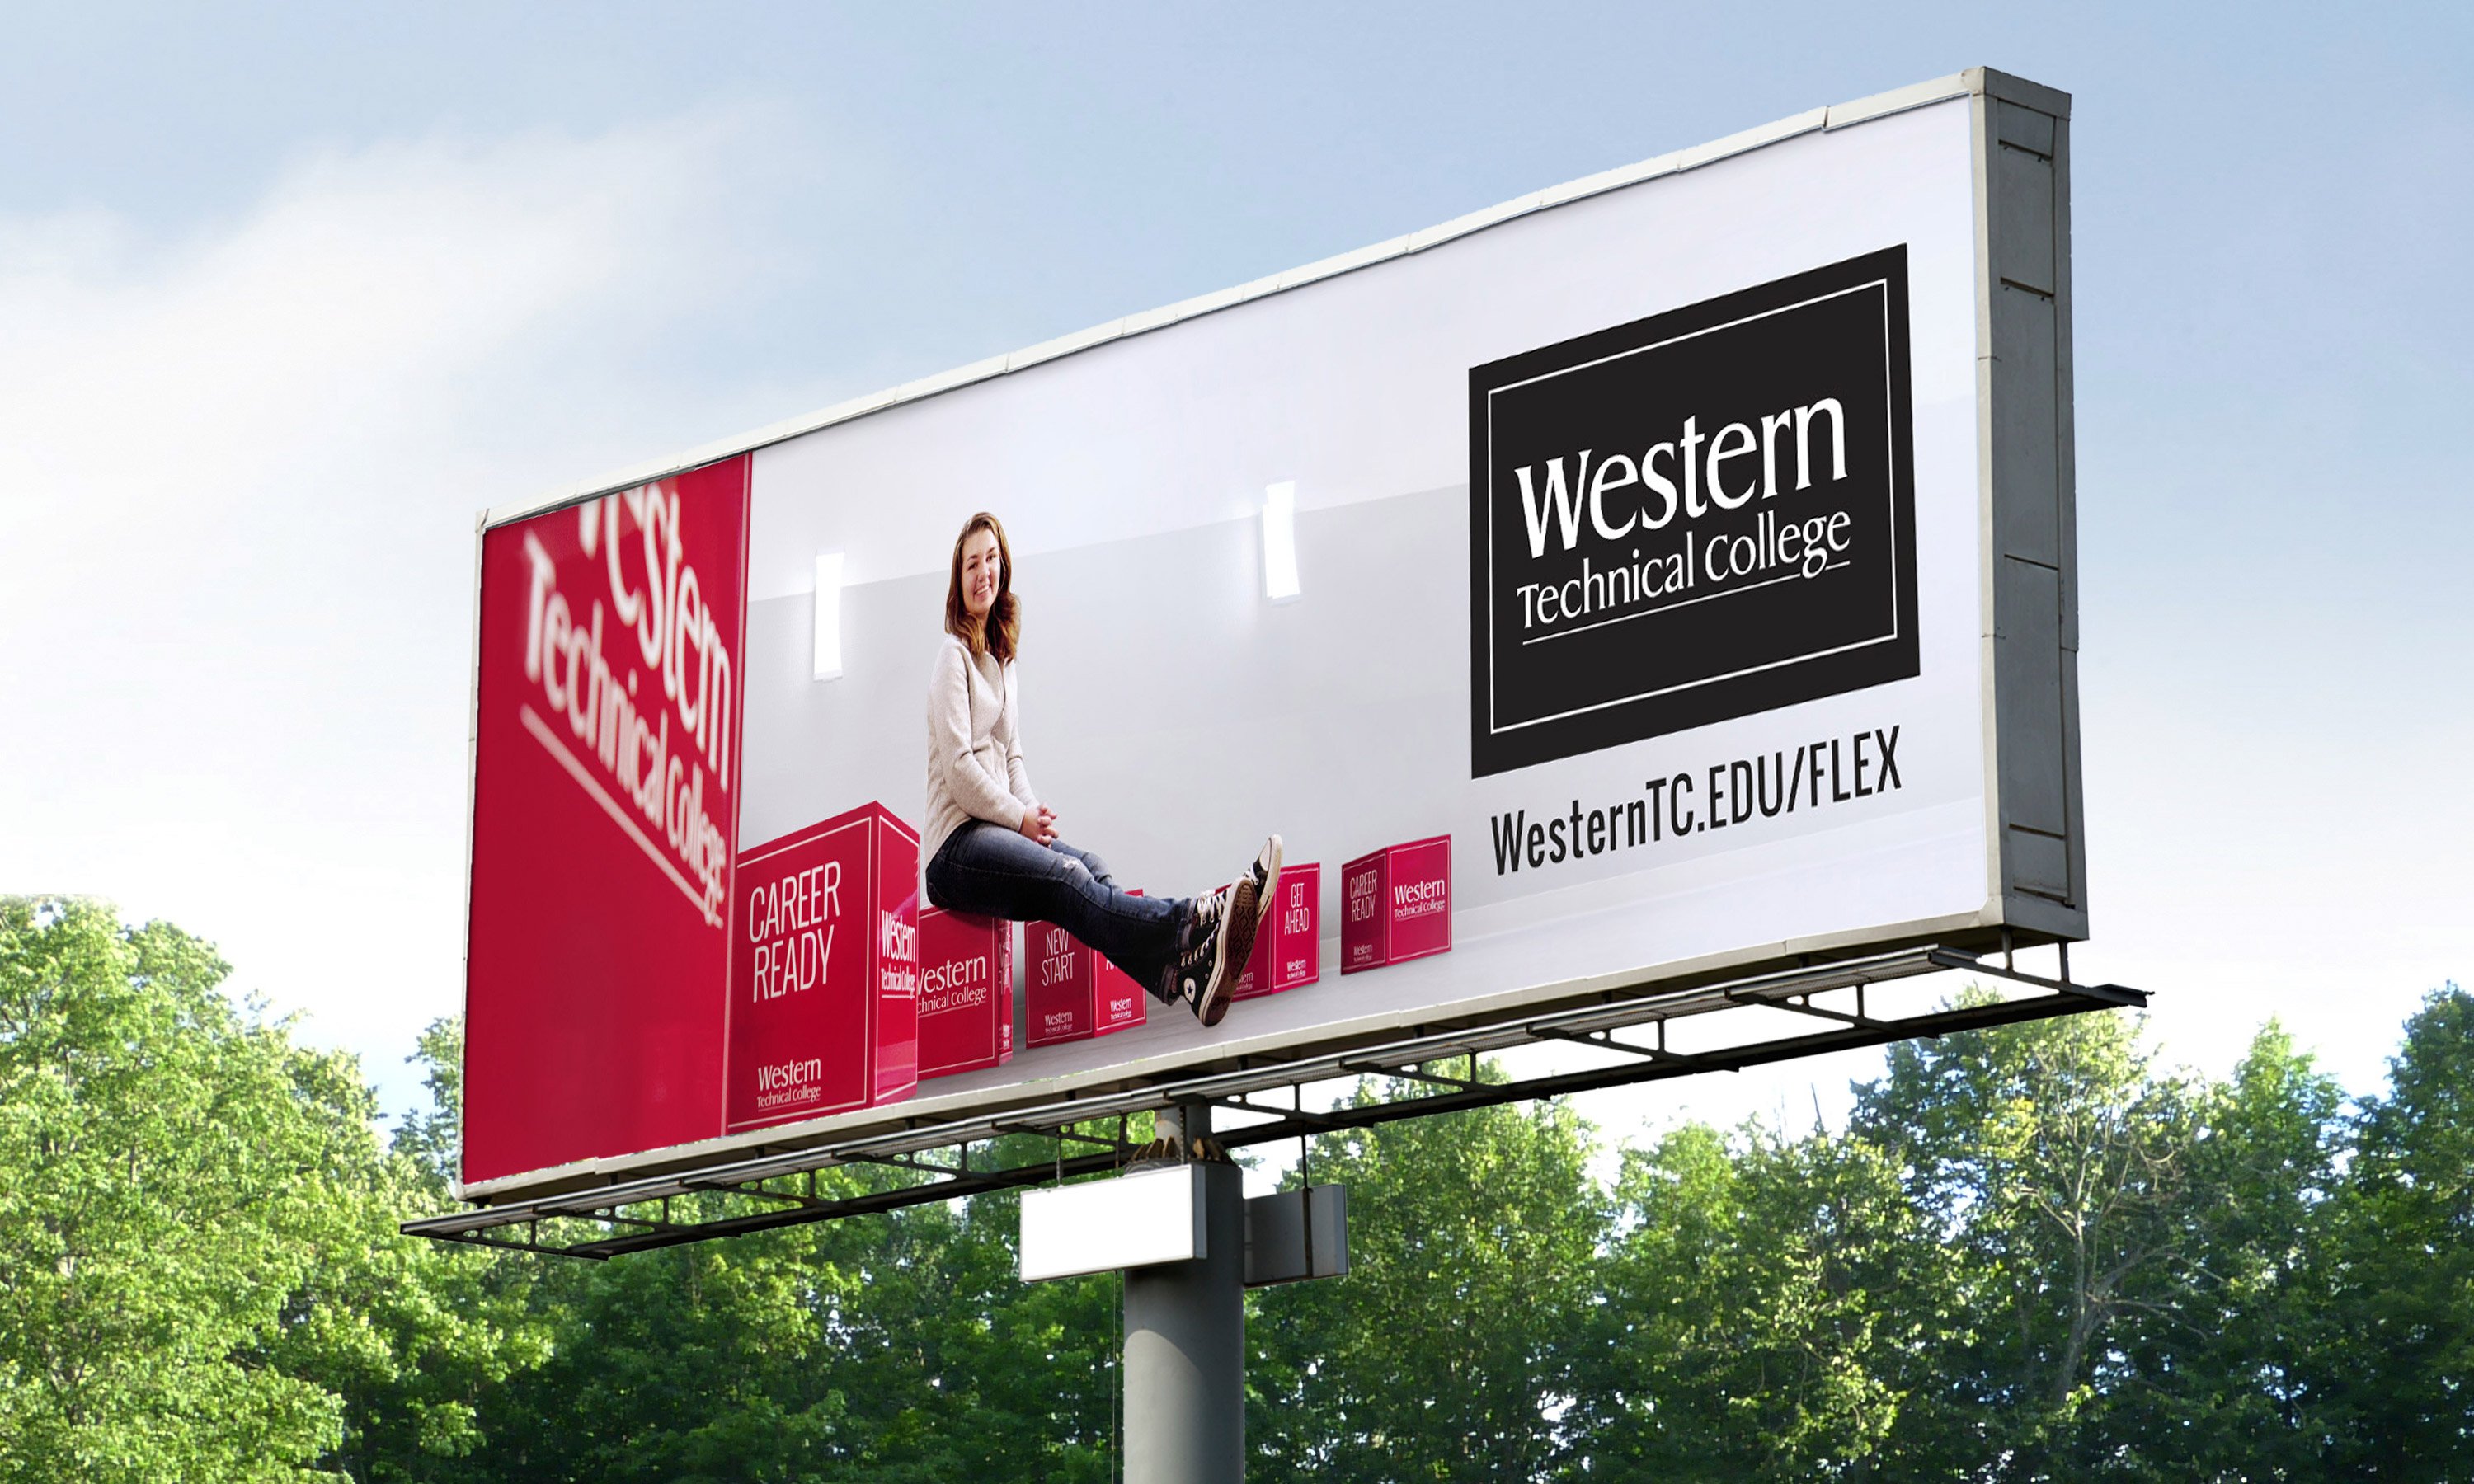 Billboard highlighting Western program flexibility, with school logo, female student and Western T C dot edu slash flex URL